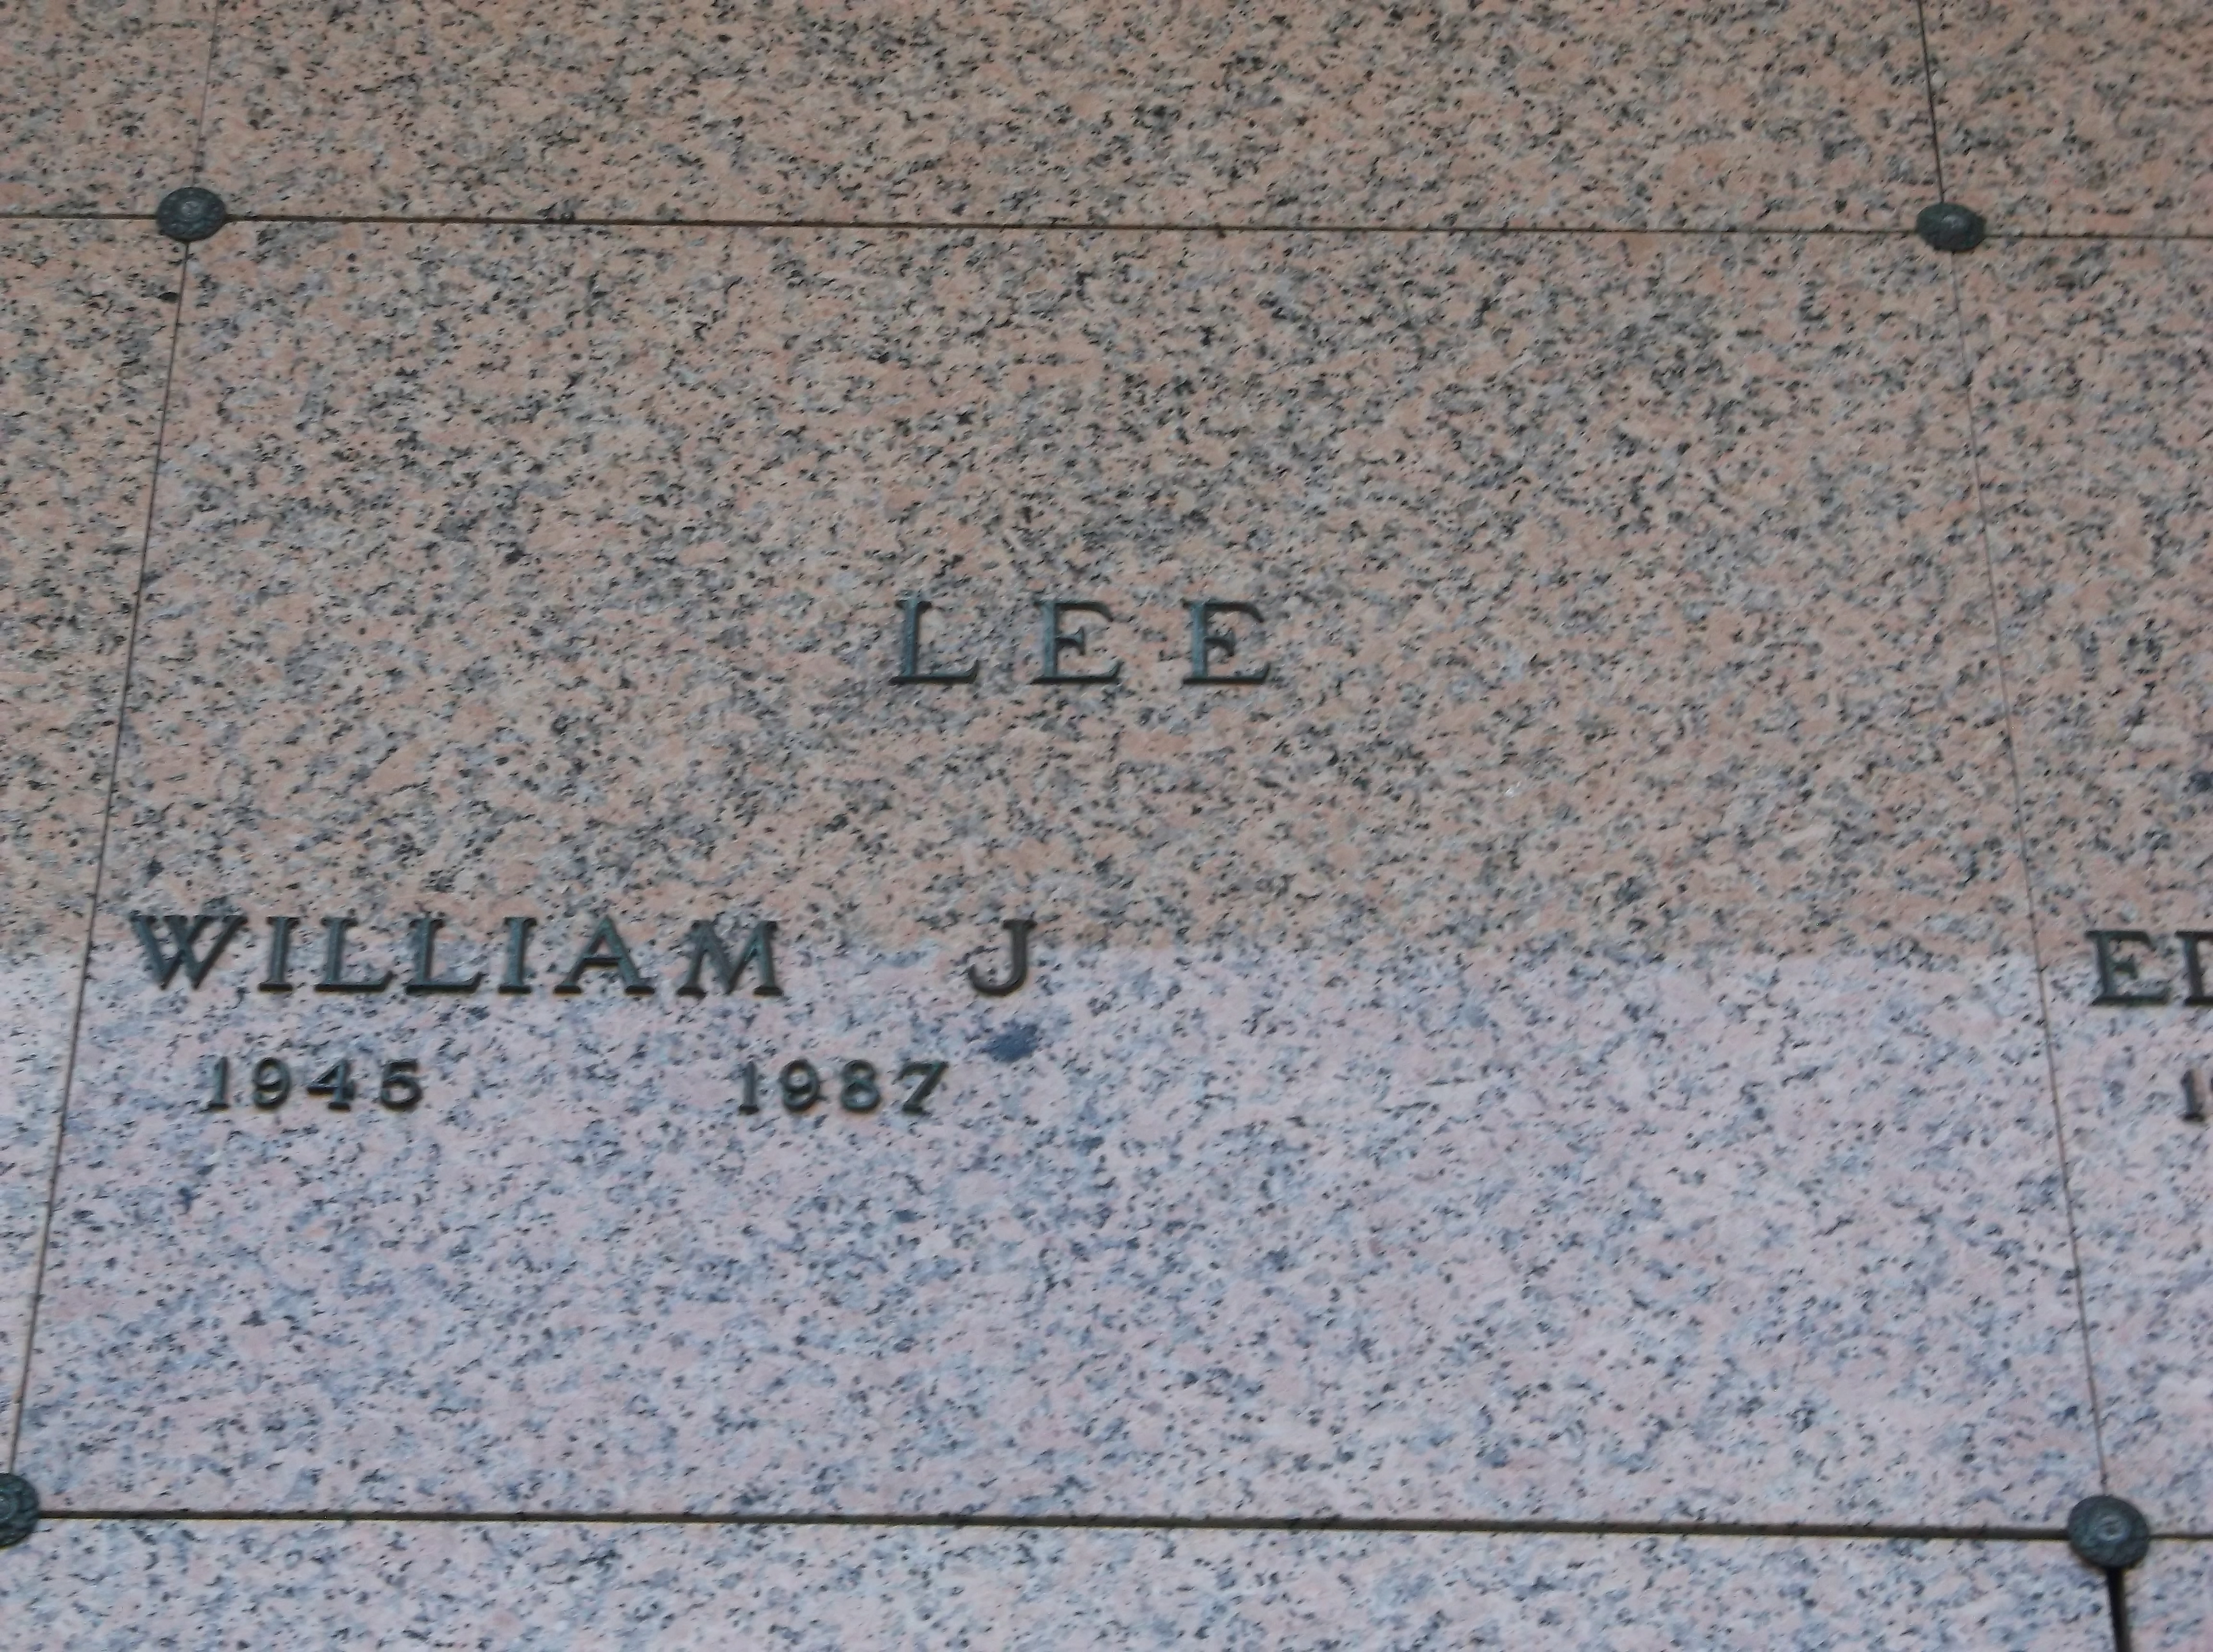 William J Lee